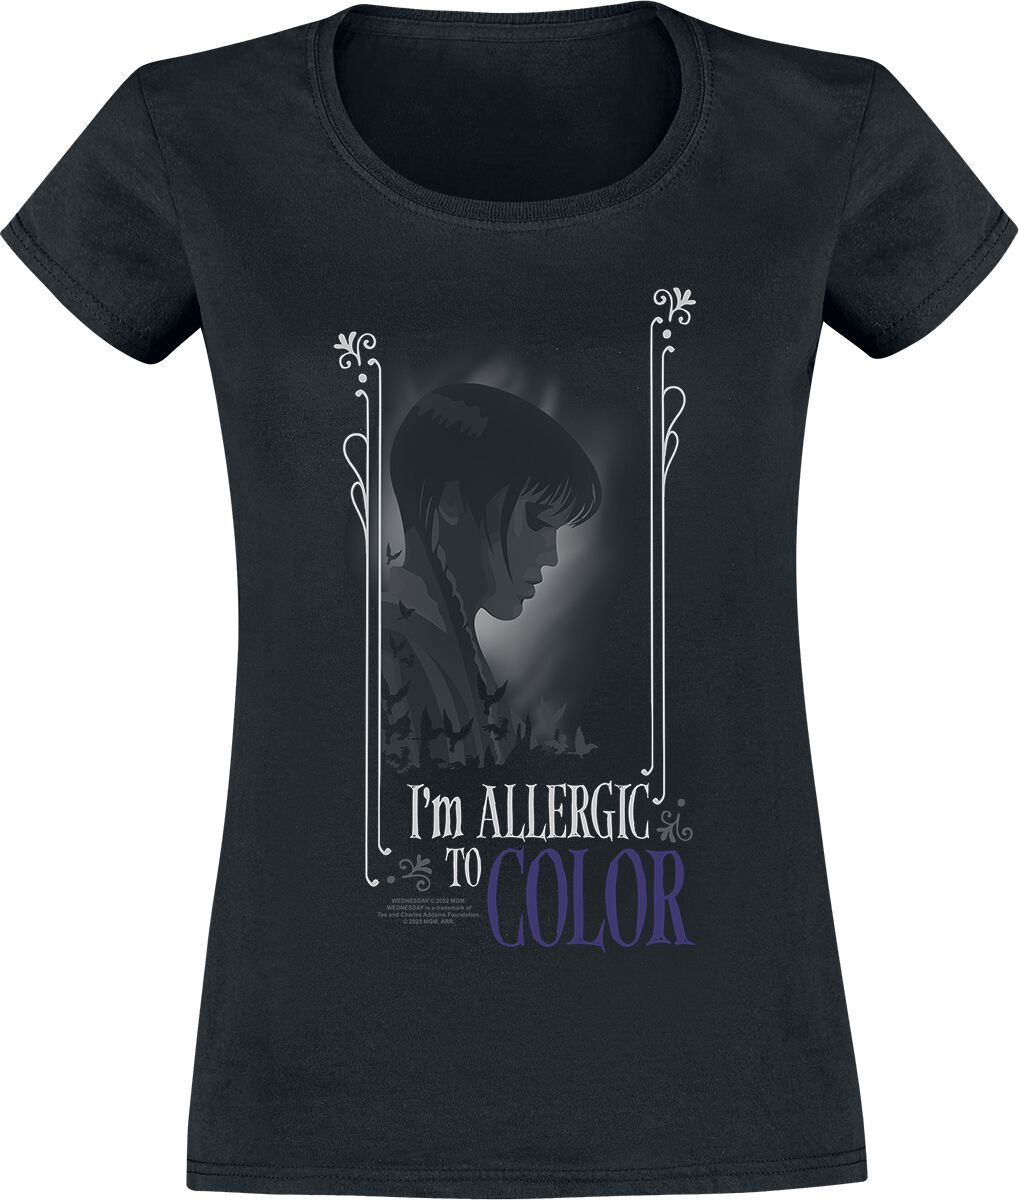 T-Shirt Manches courtes de Wednesday - Allergic To Colour - S à XXL - pour Femme - noir